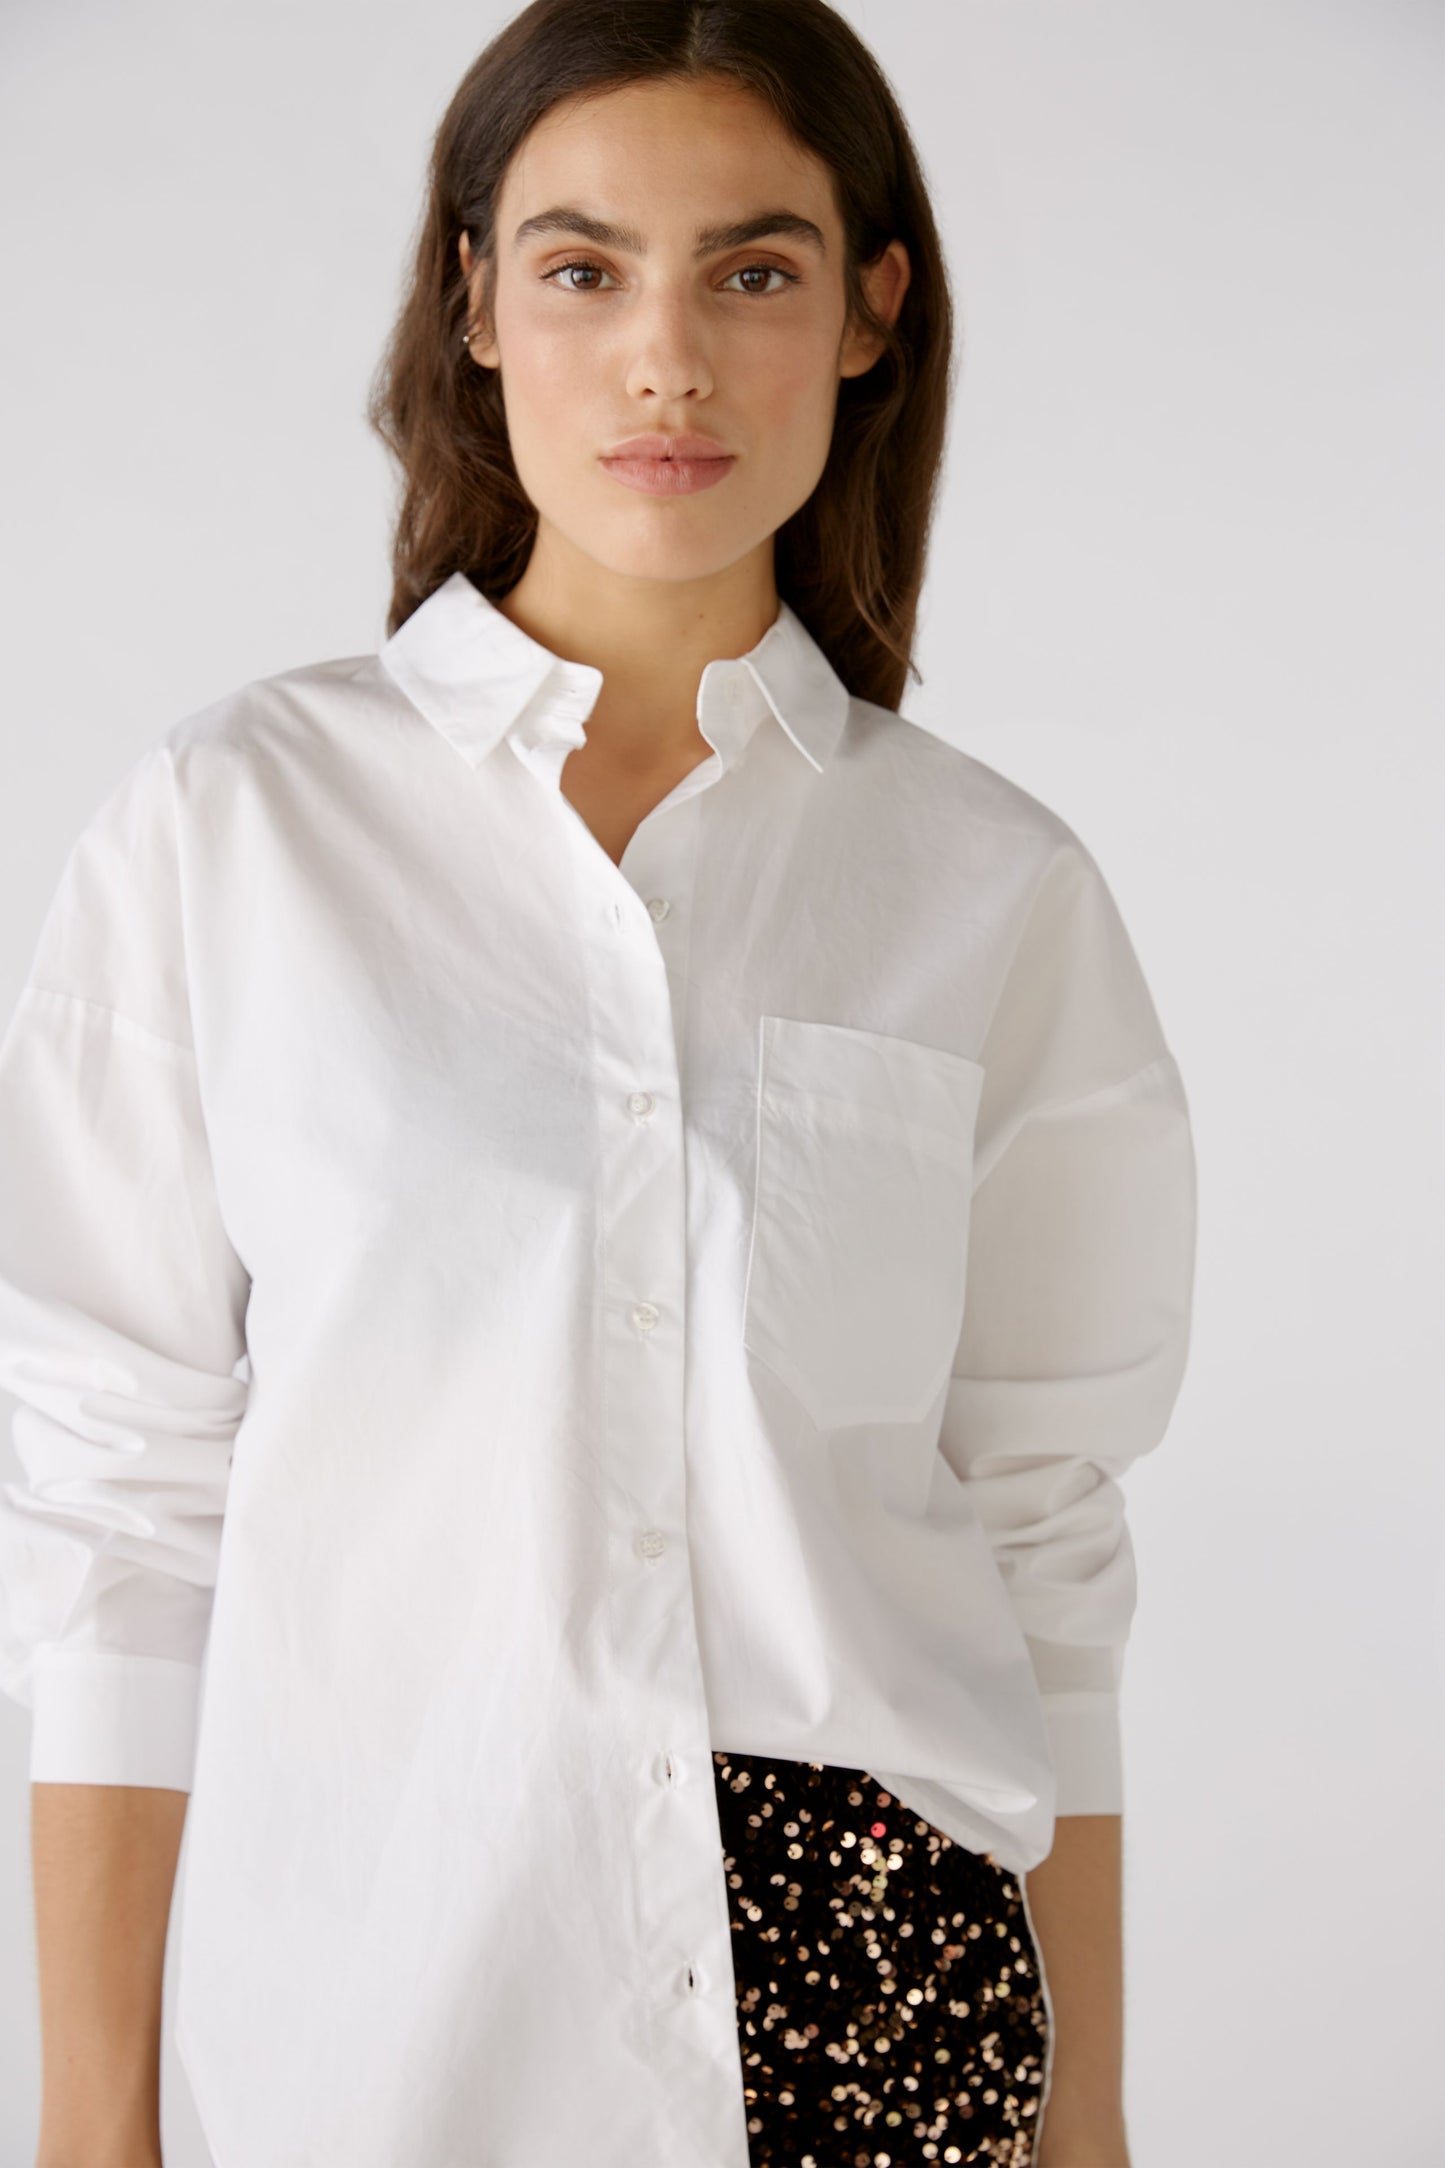 Oui Optic White Cotton Shirt